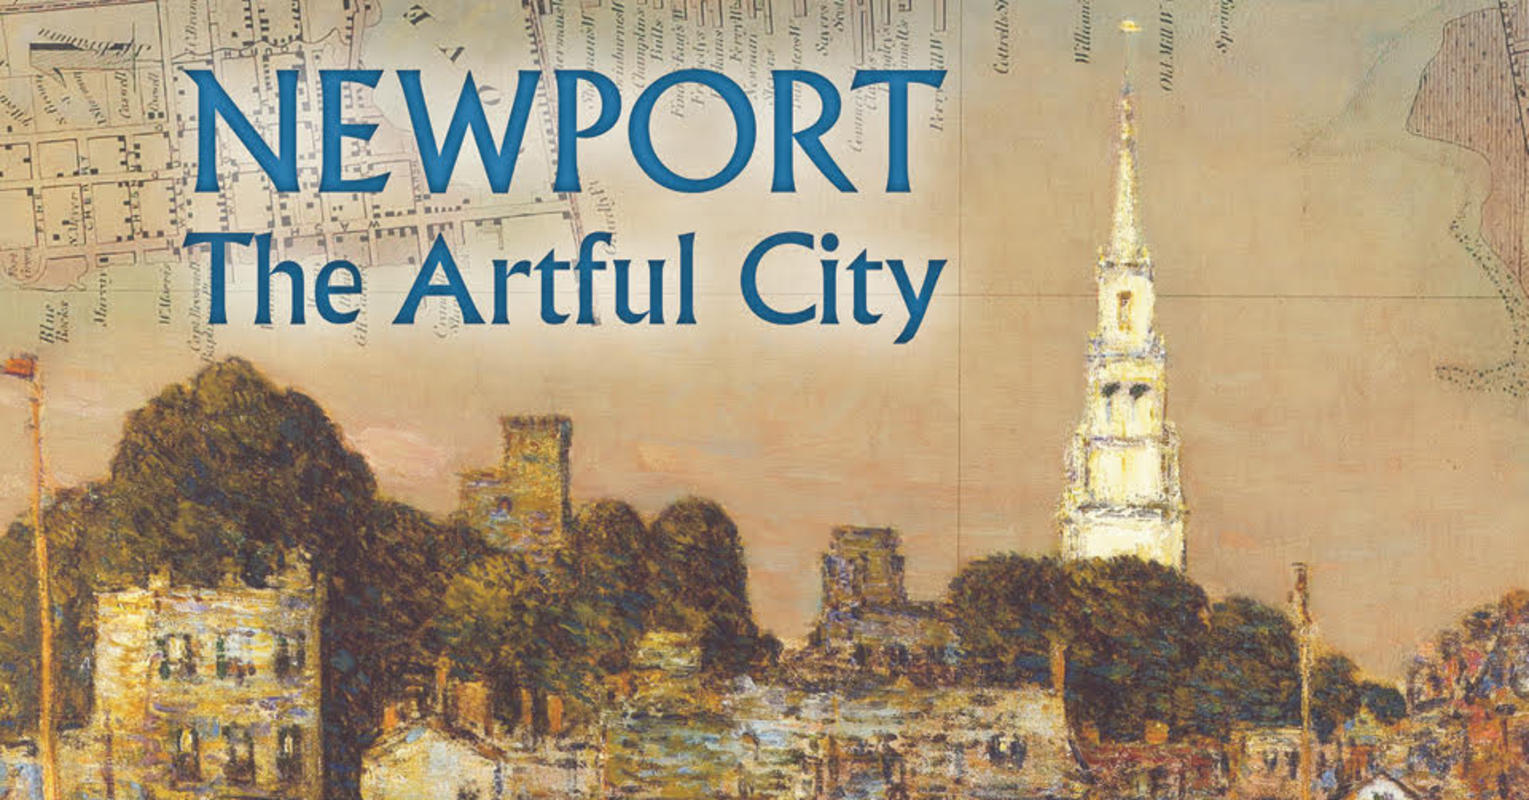 Newport the Artful City book cover